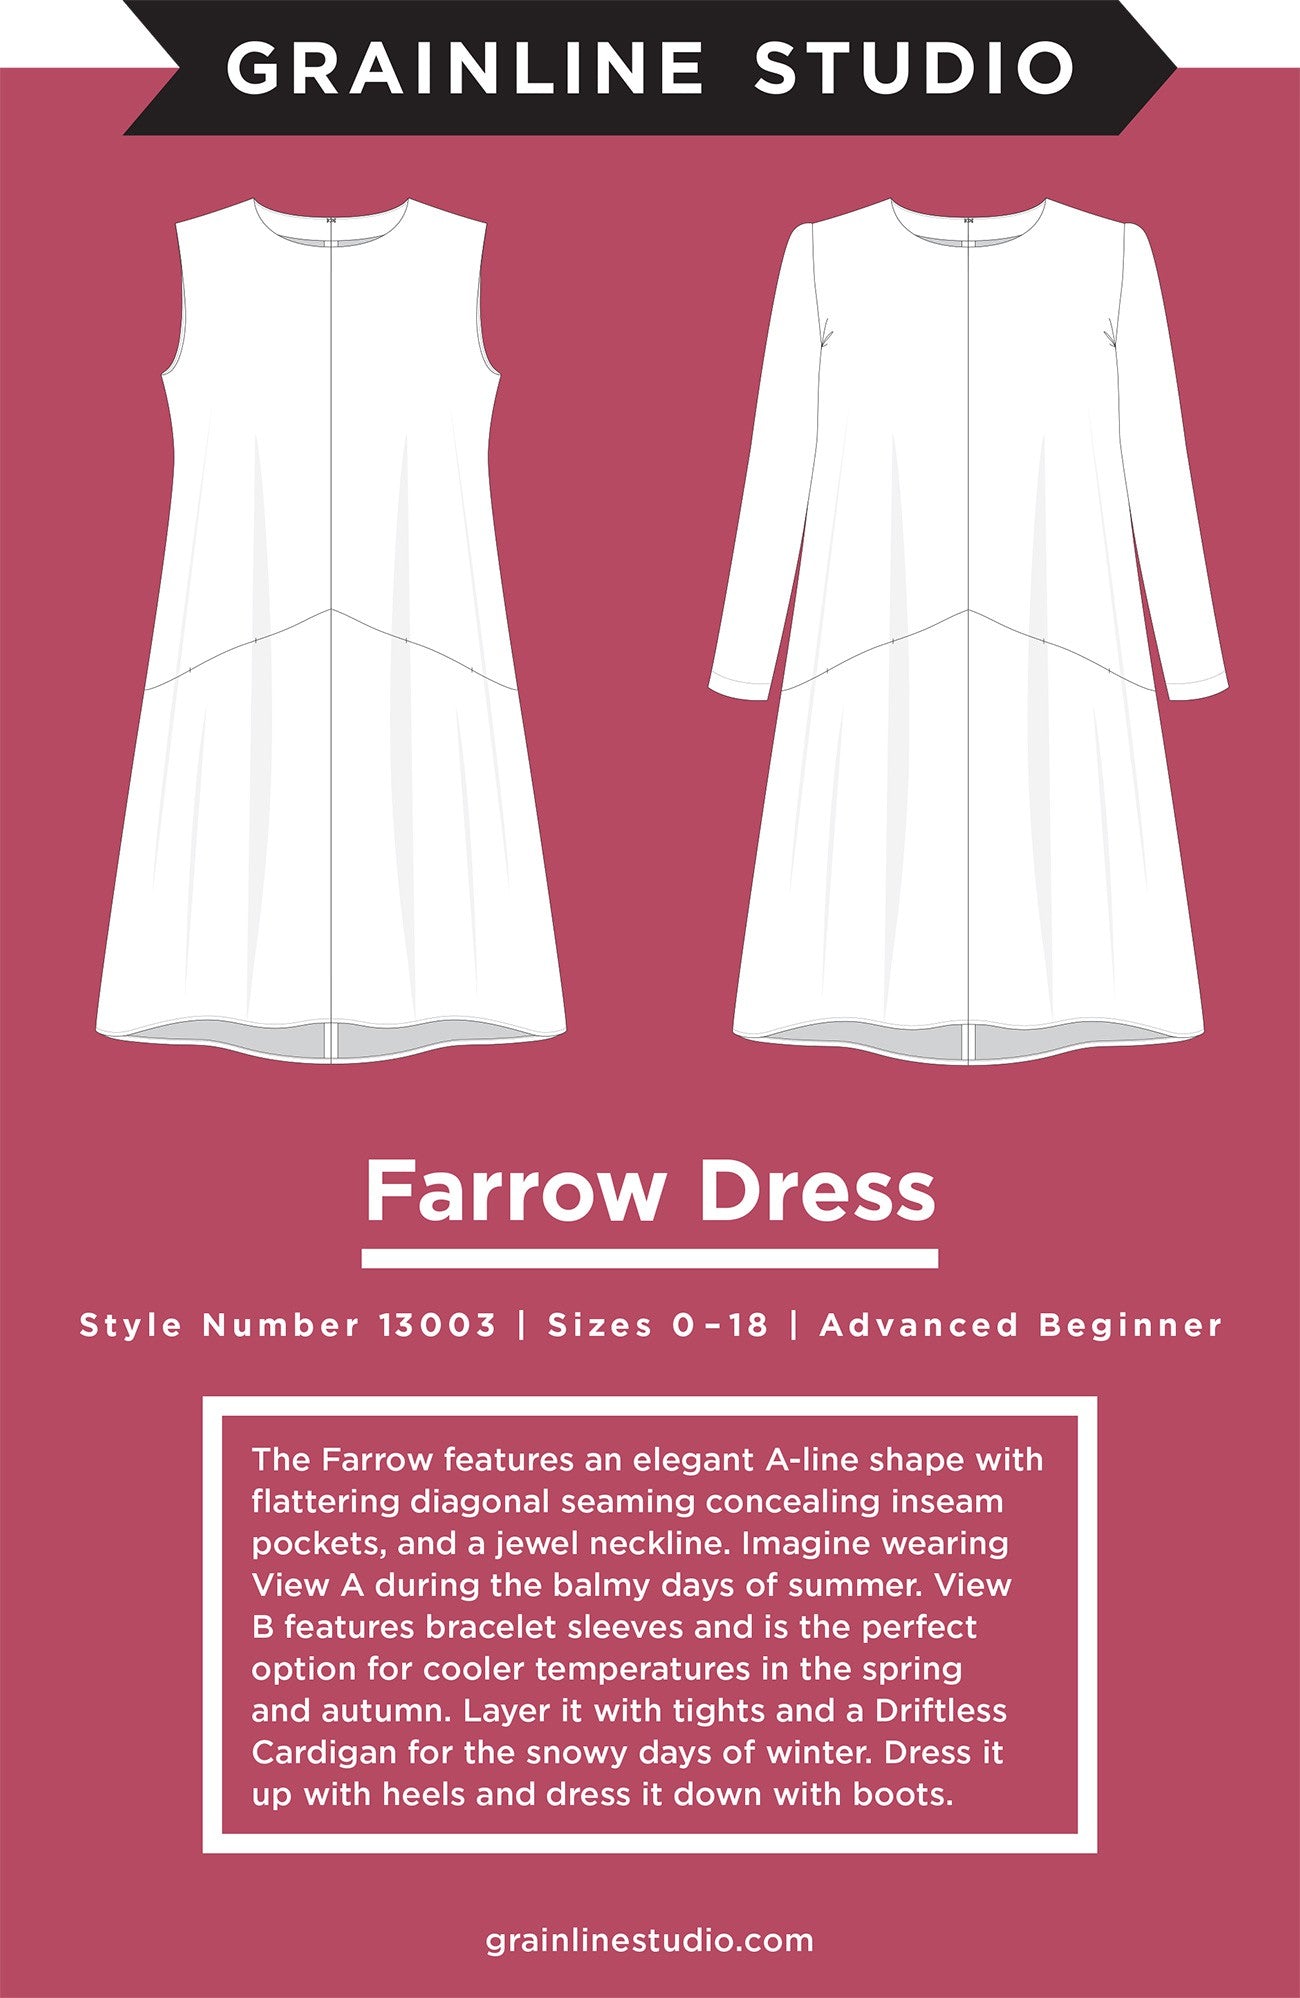 Farrow Dress Sizes 0 - 18 Advanced Beginner Sewing Pattern by Jen Beeman of Grainline Studio